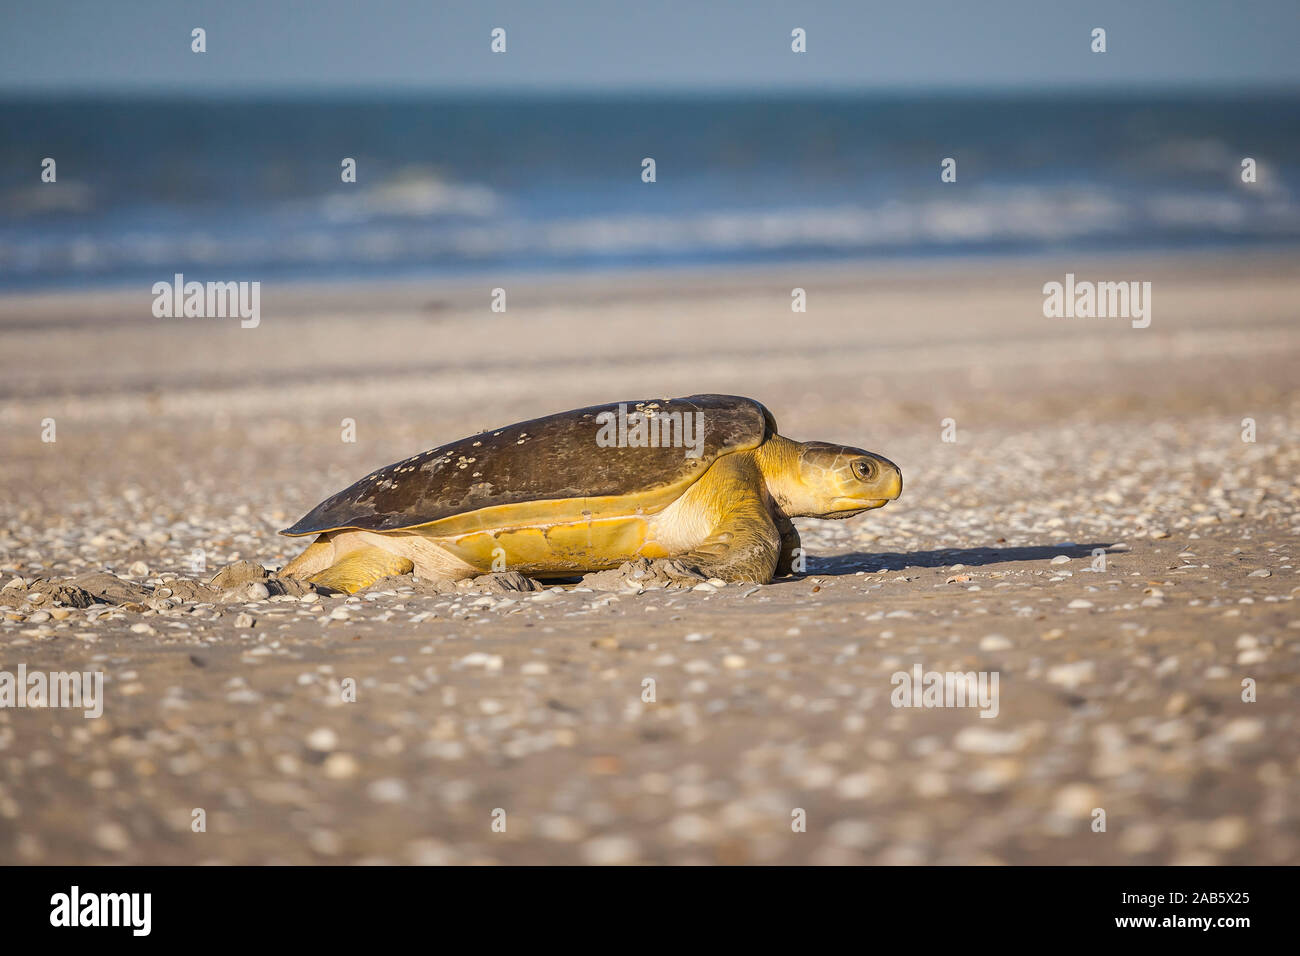 Eine Schildkroete am 80-Meilen-Strand in Australien Stock Photo